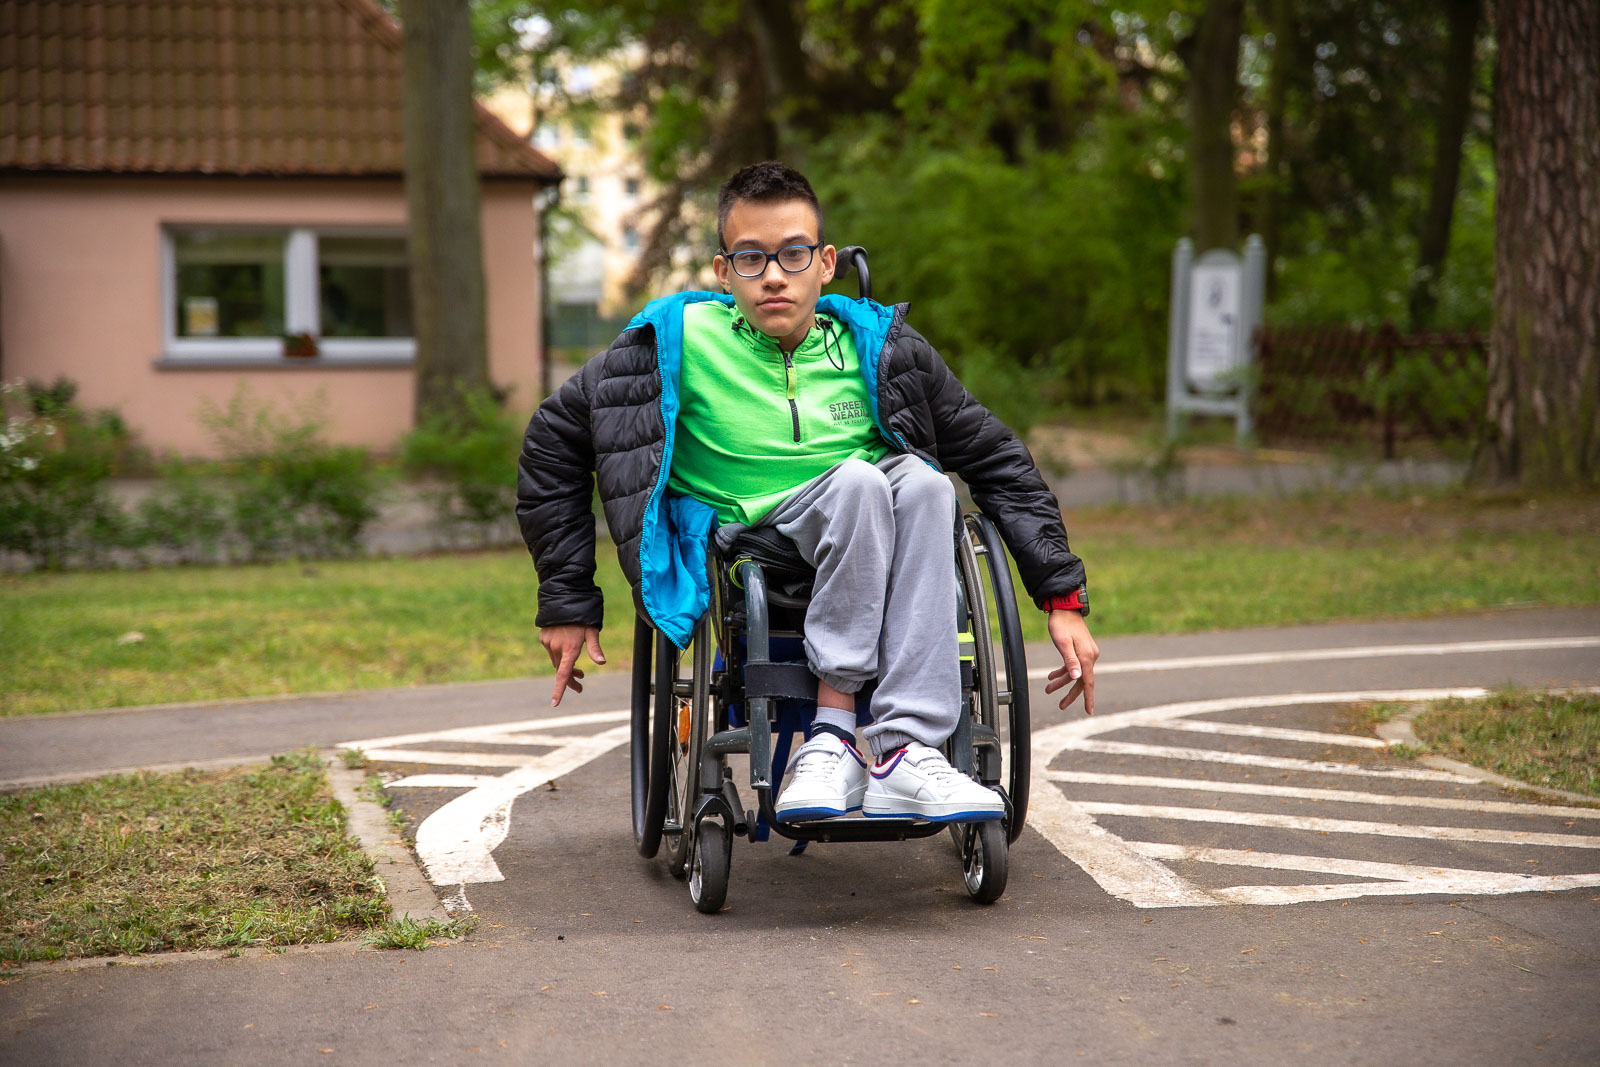 Chłopczyk w widocznej zielonej bluzie poruszający się wózkiem po drodze